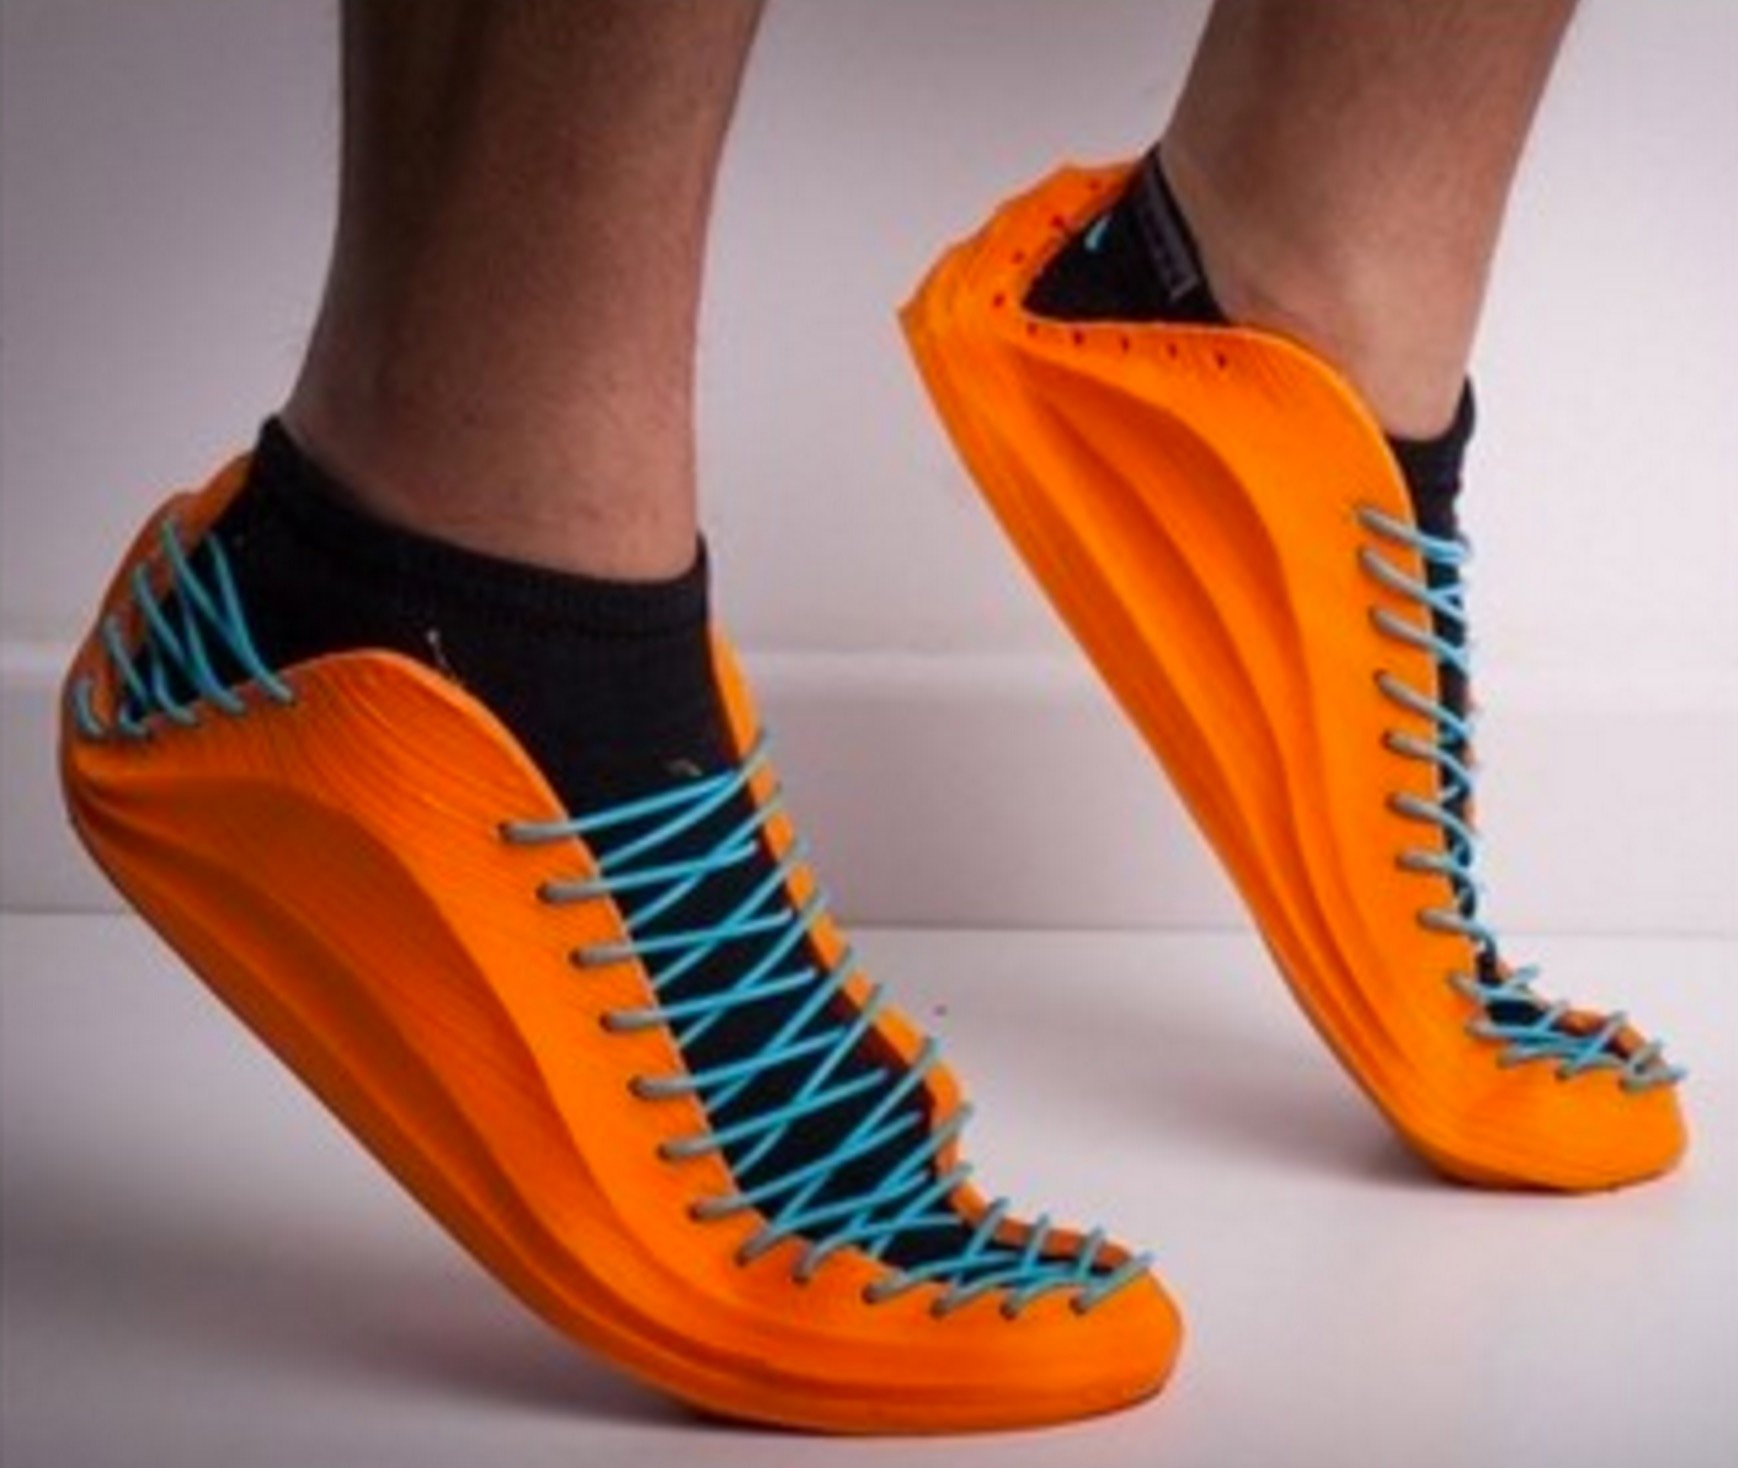  3D printed sneakers by Recreus3D 